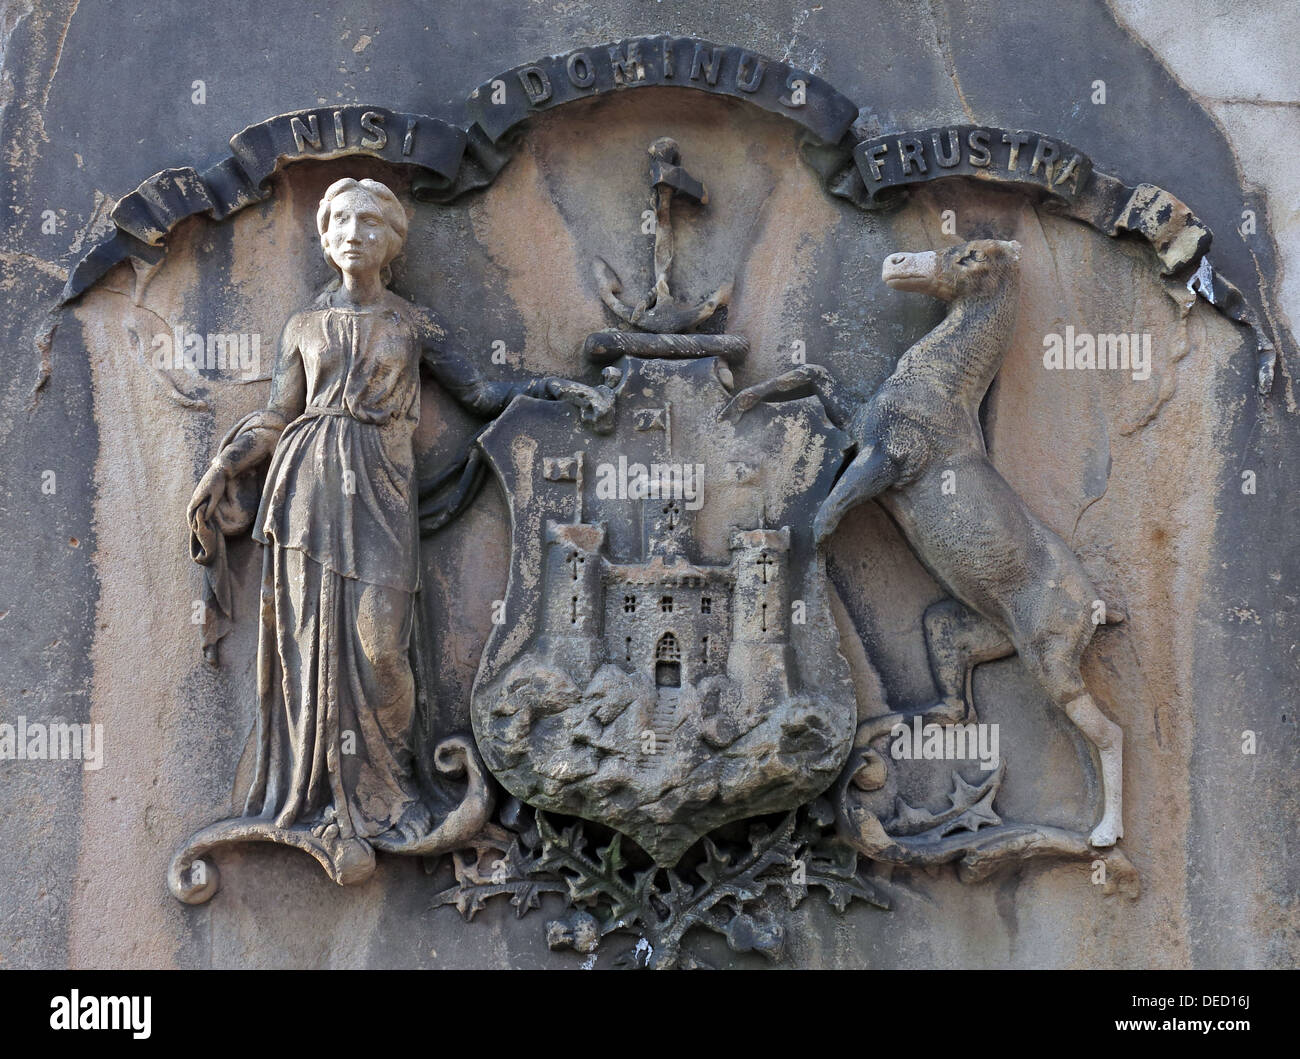 Nisi Dominus frustra, la cresta di Edimburgo, sulla fontana di pietra della città, Scozia Foto Stock